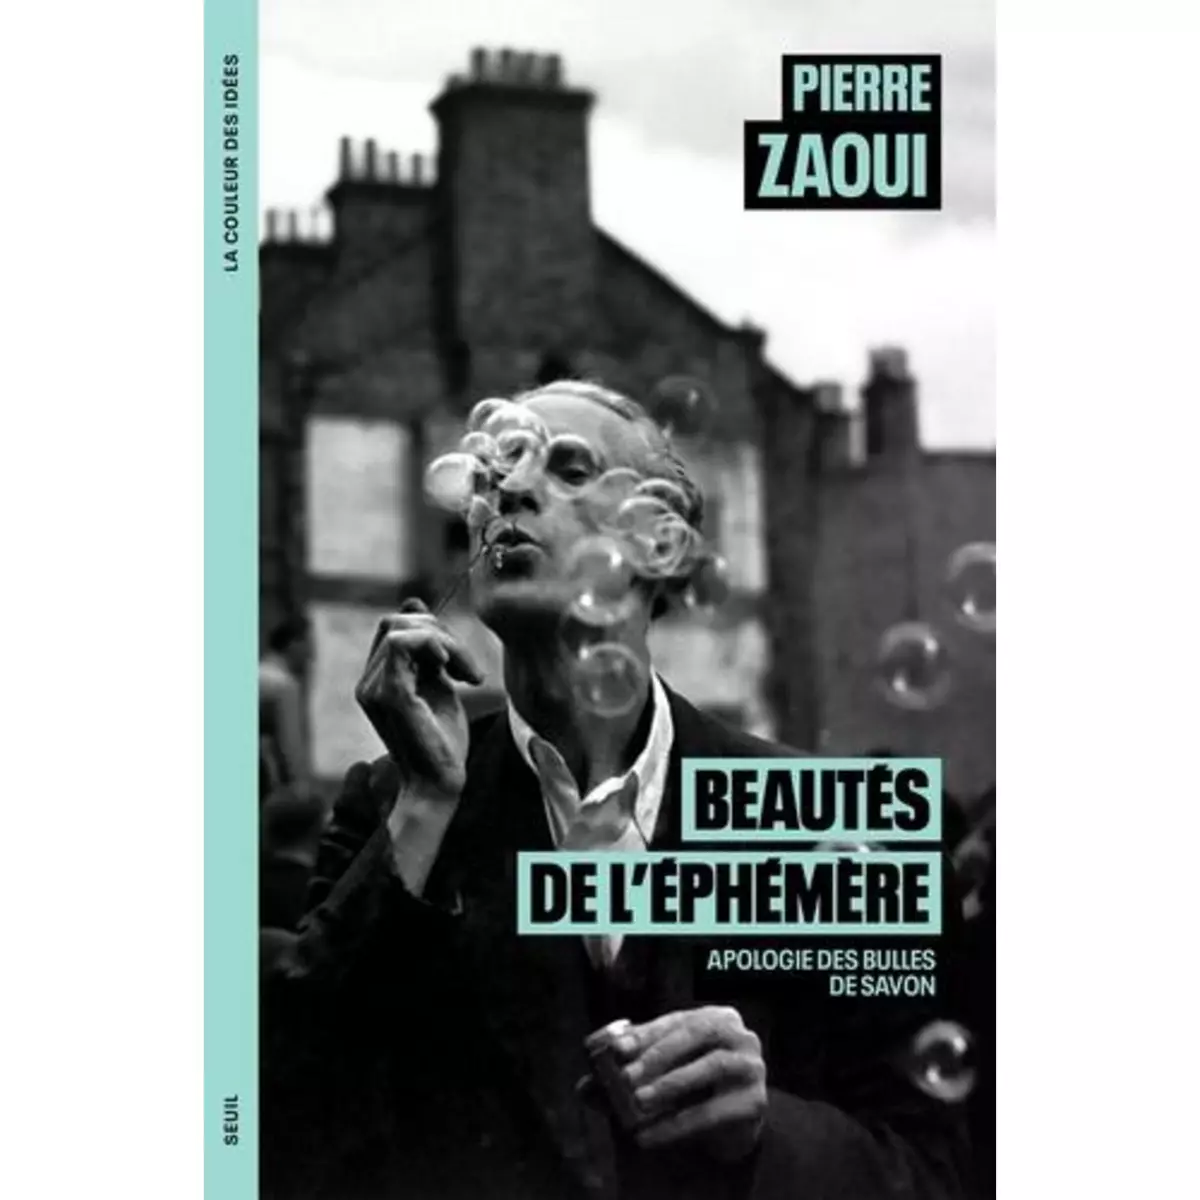  BEAUTES DE L'EPHEMERE. APOLOGIE DES BULLES DE SAVON, Zaoui Pierre